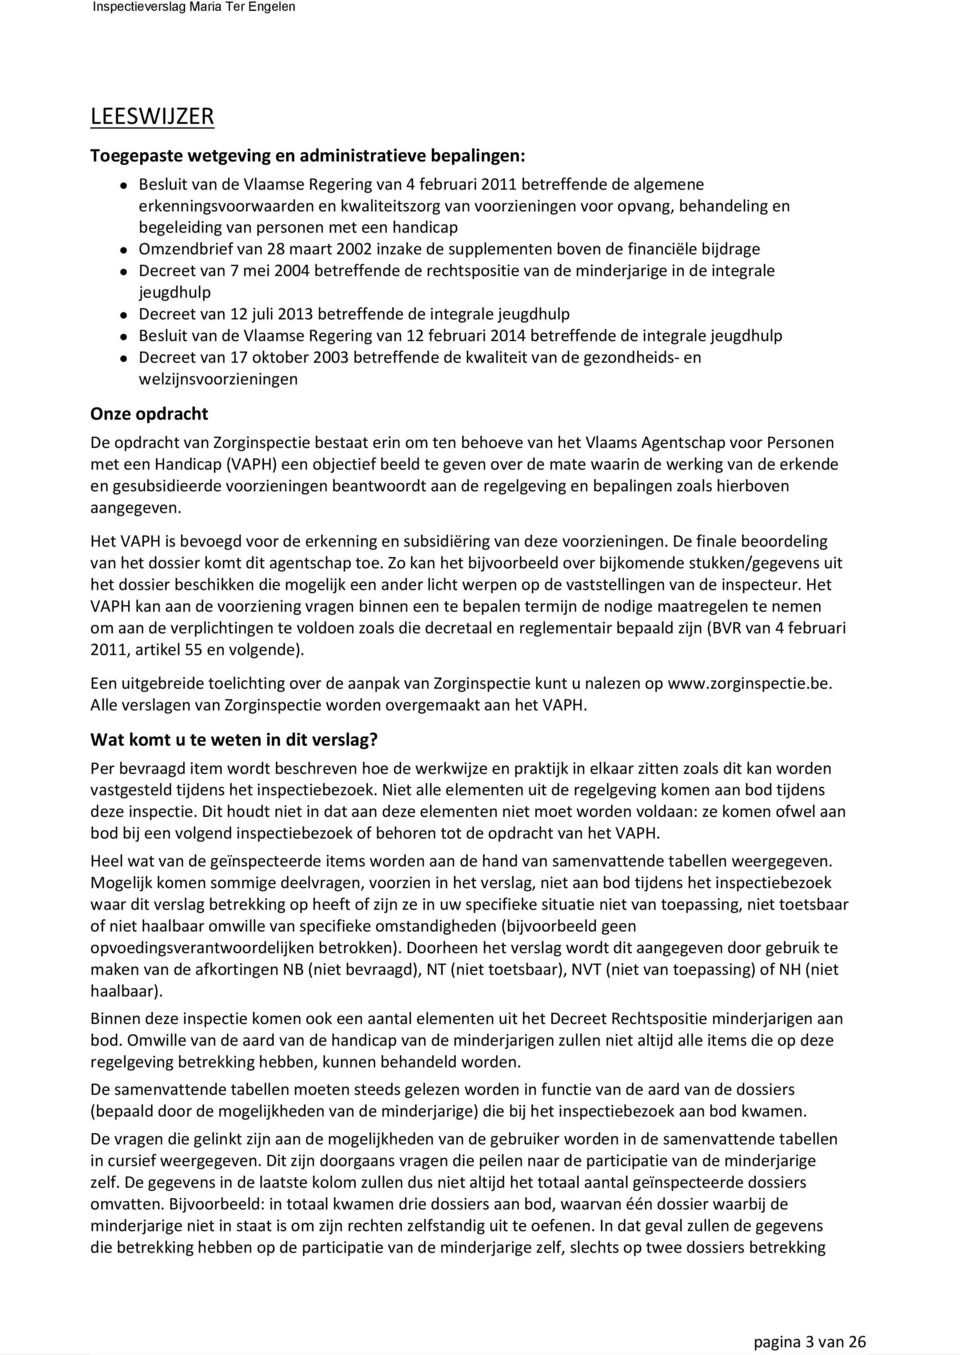 rechtspositie van de minderjarige in de integrale jeugdhulp Decreet van 12 juli 2013 betreffende de integrale jeugdhulp Besluit van de Vlaamse Regering van 12 februari 2014 betreffende de integrale